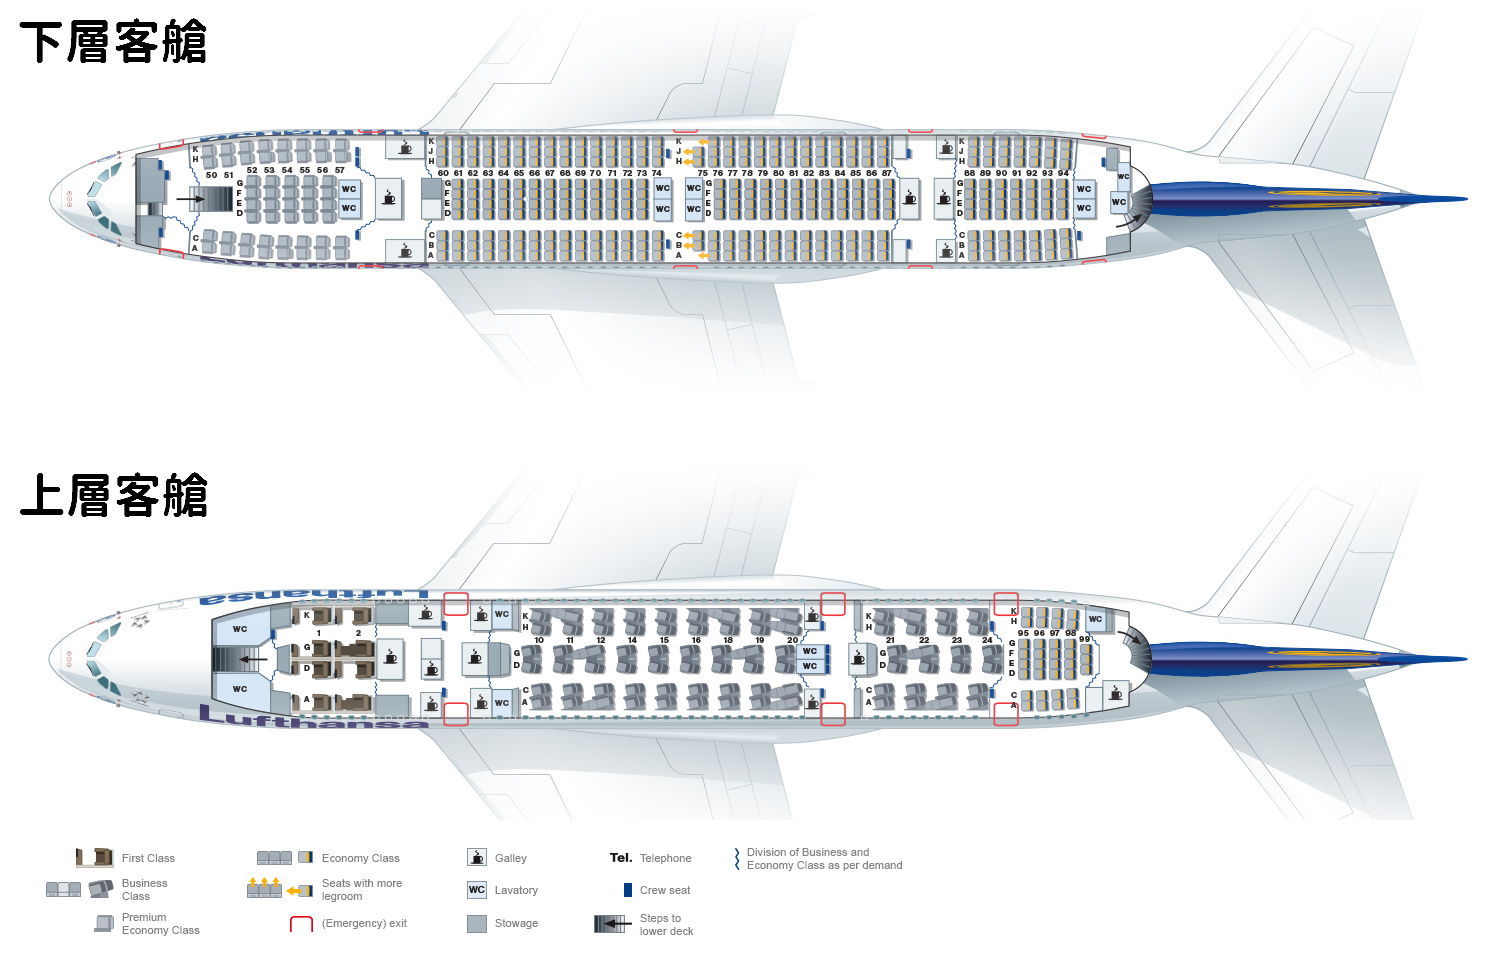 LH_A380_02